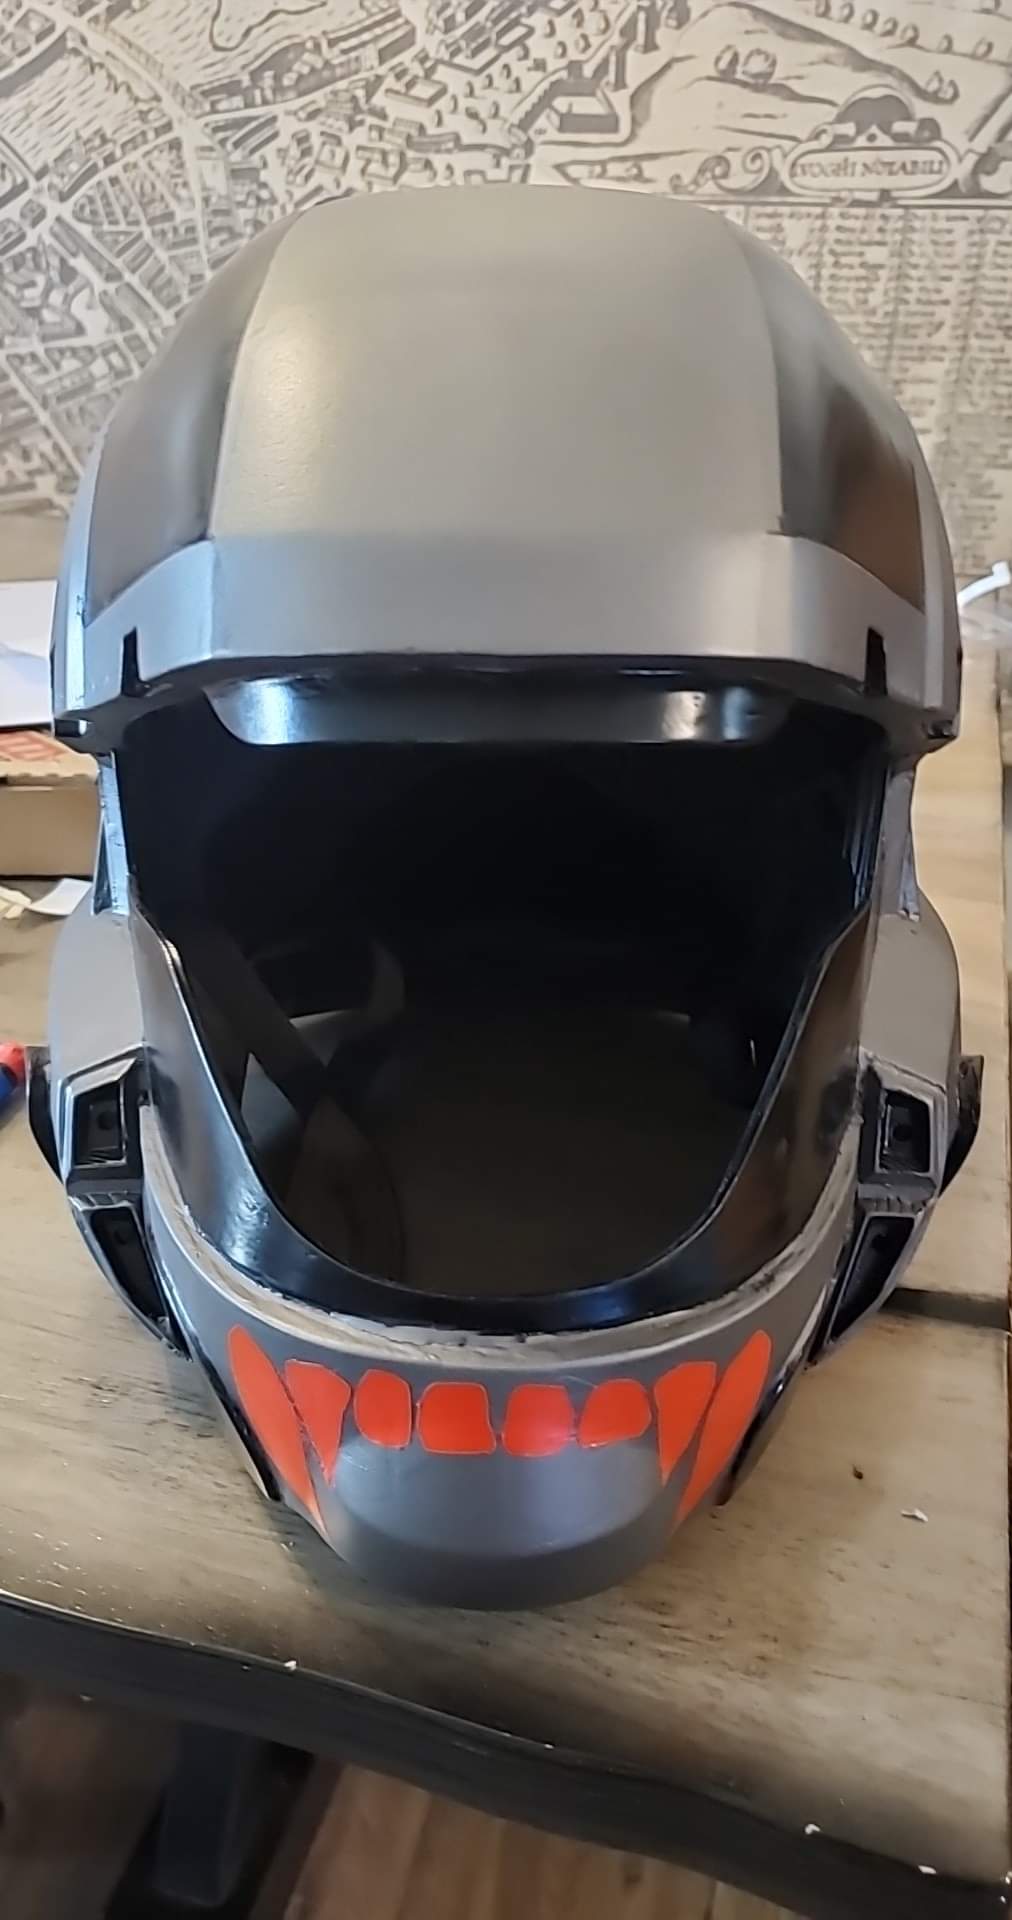 Helmet front